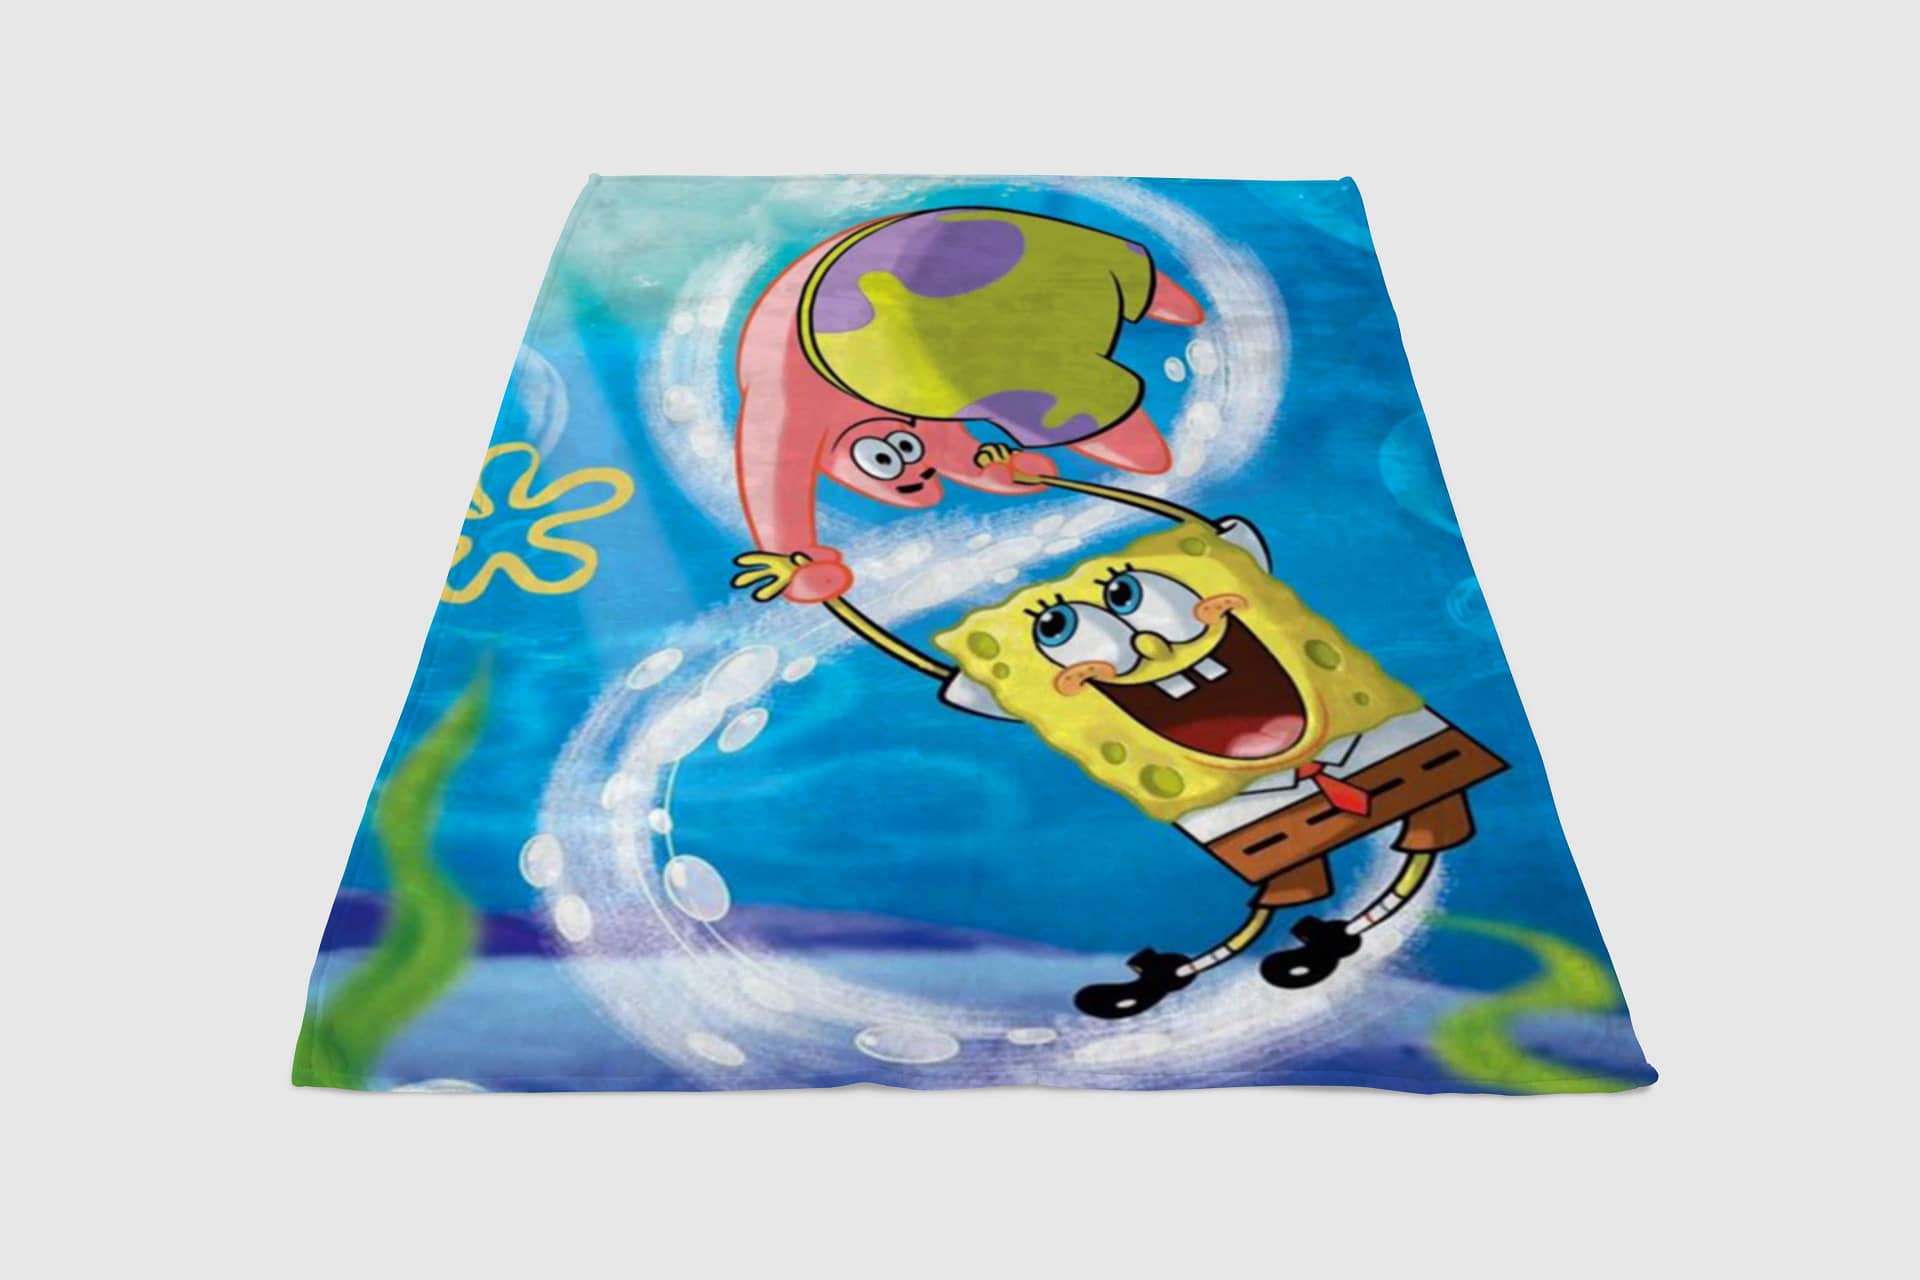 Spongebob Squarepants Fleece Blanket